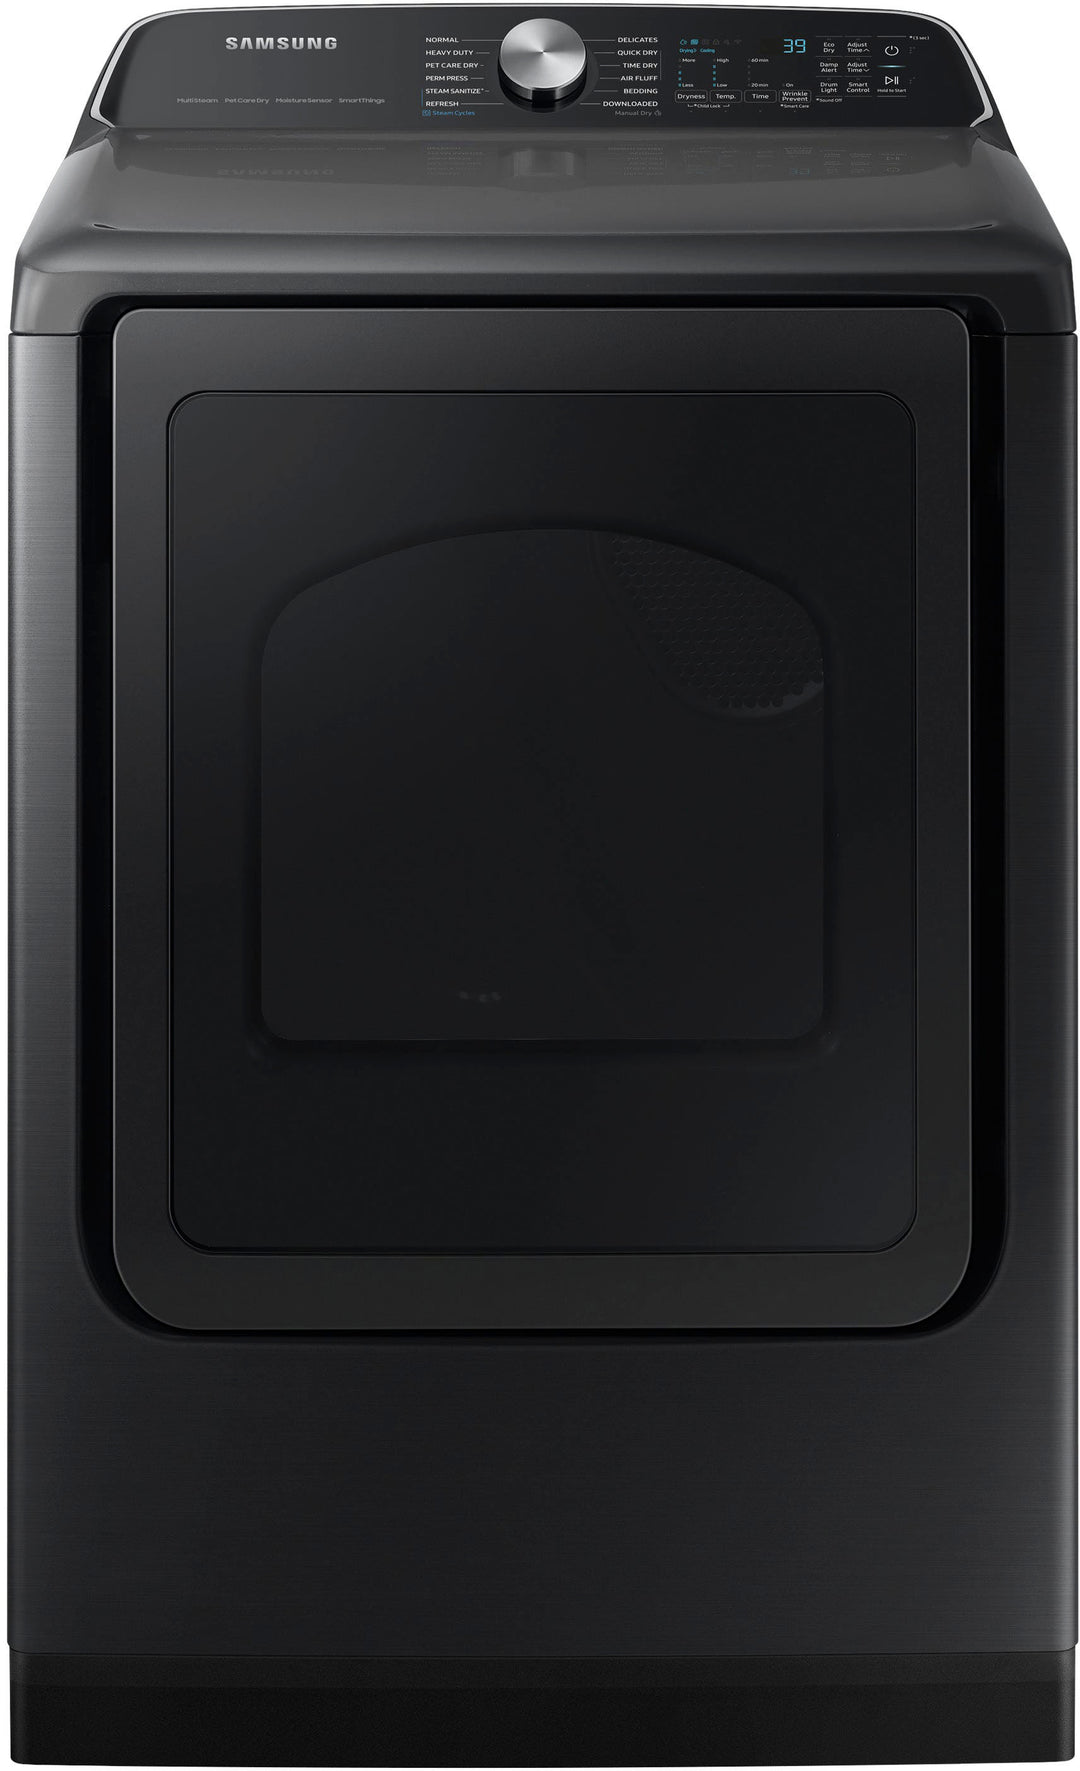 Samsung 5.5 Cu. Ft. Smart Top Load Washer & 7.4 Cu. Ft. Electric Dryer Bundle Brushed Black